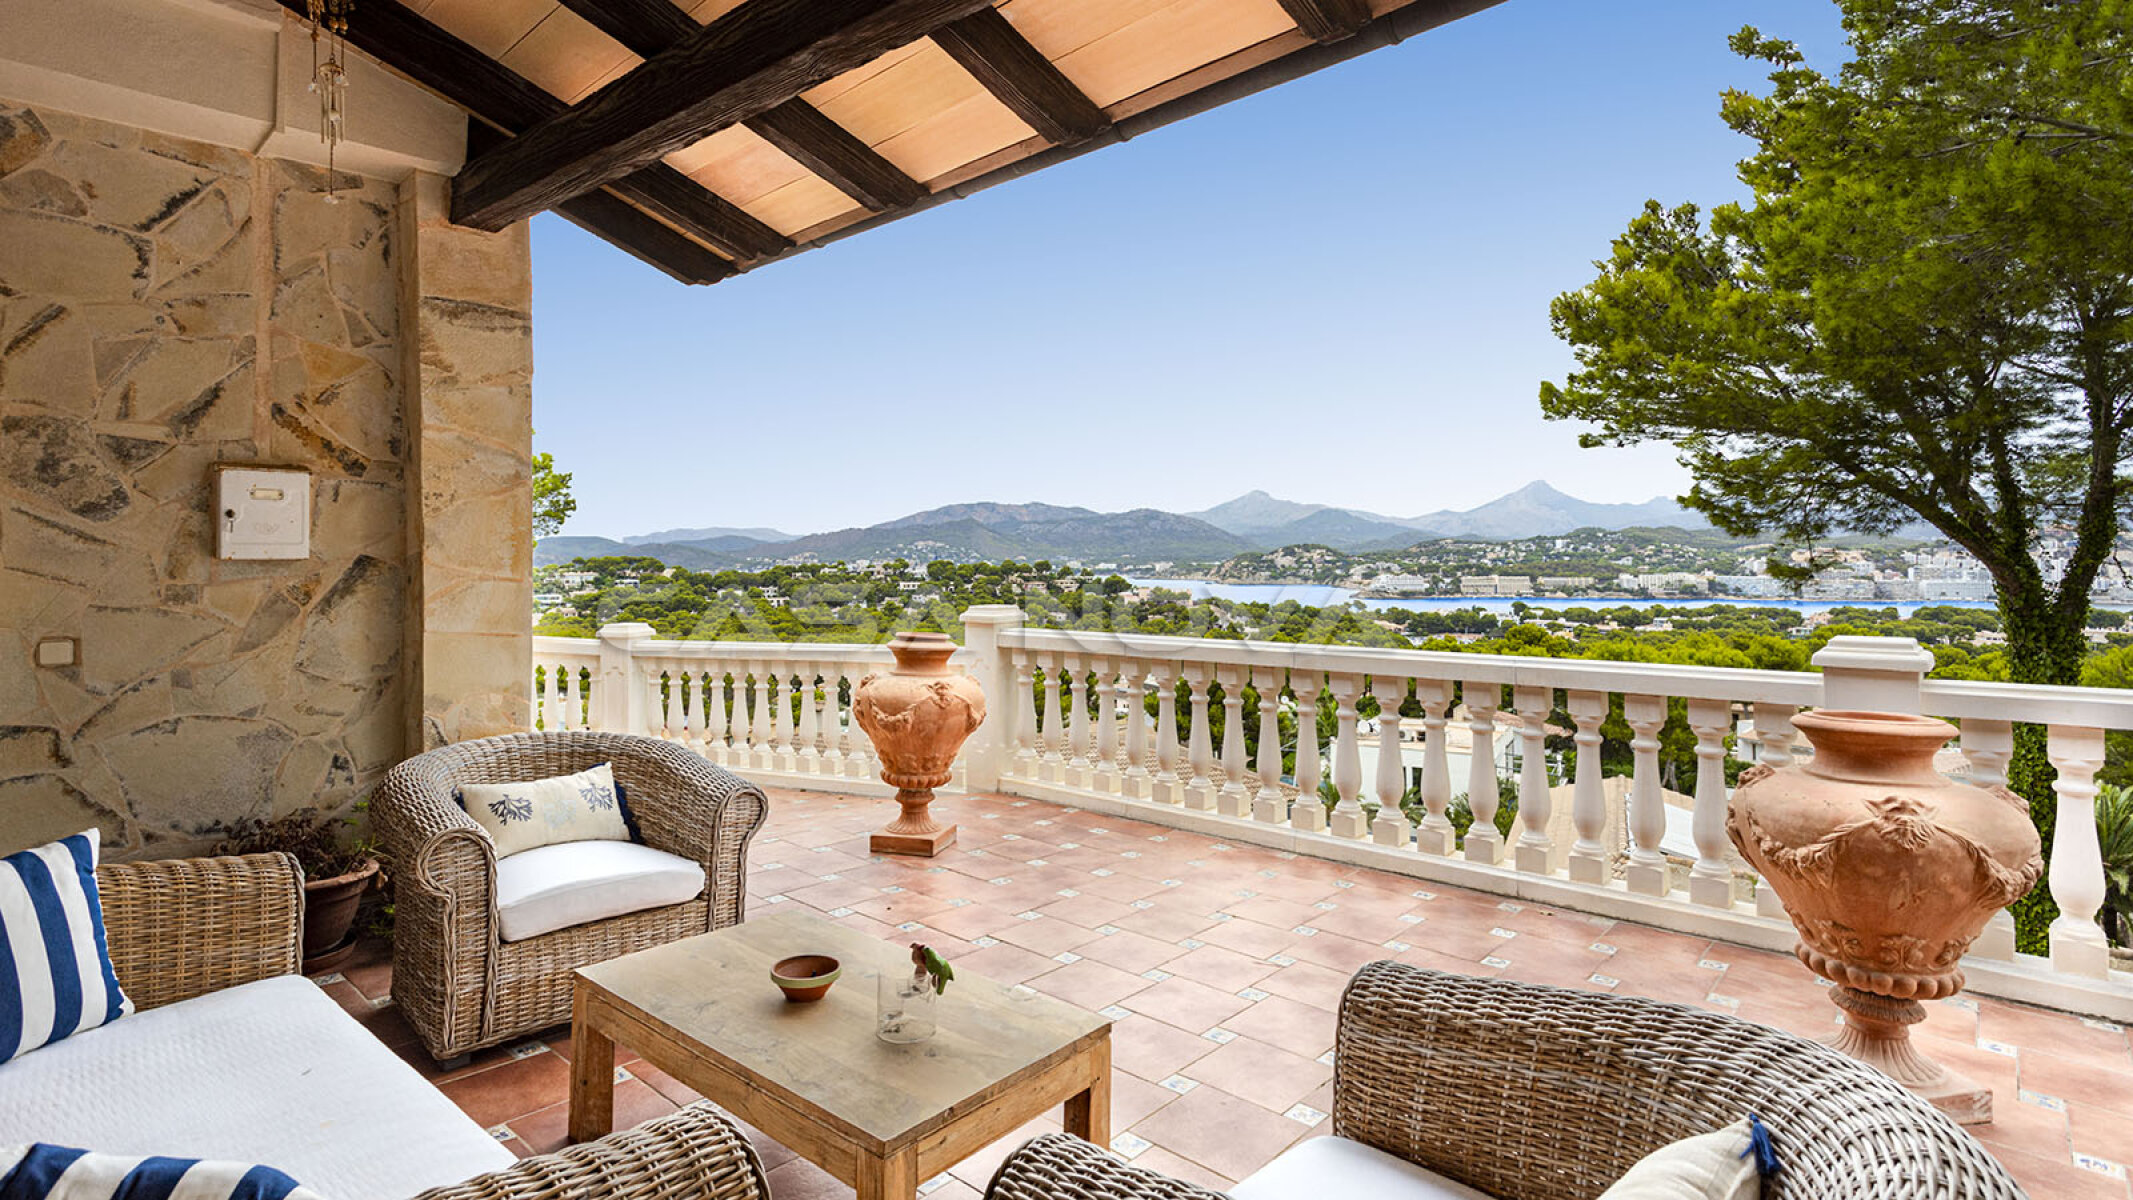 Villa exclusiva en Mallorca con vistas panor�micas al mar